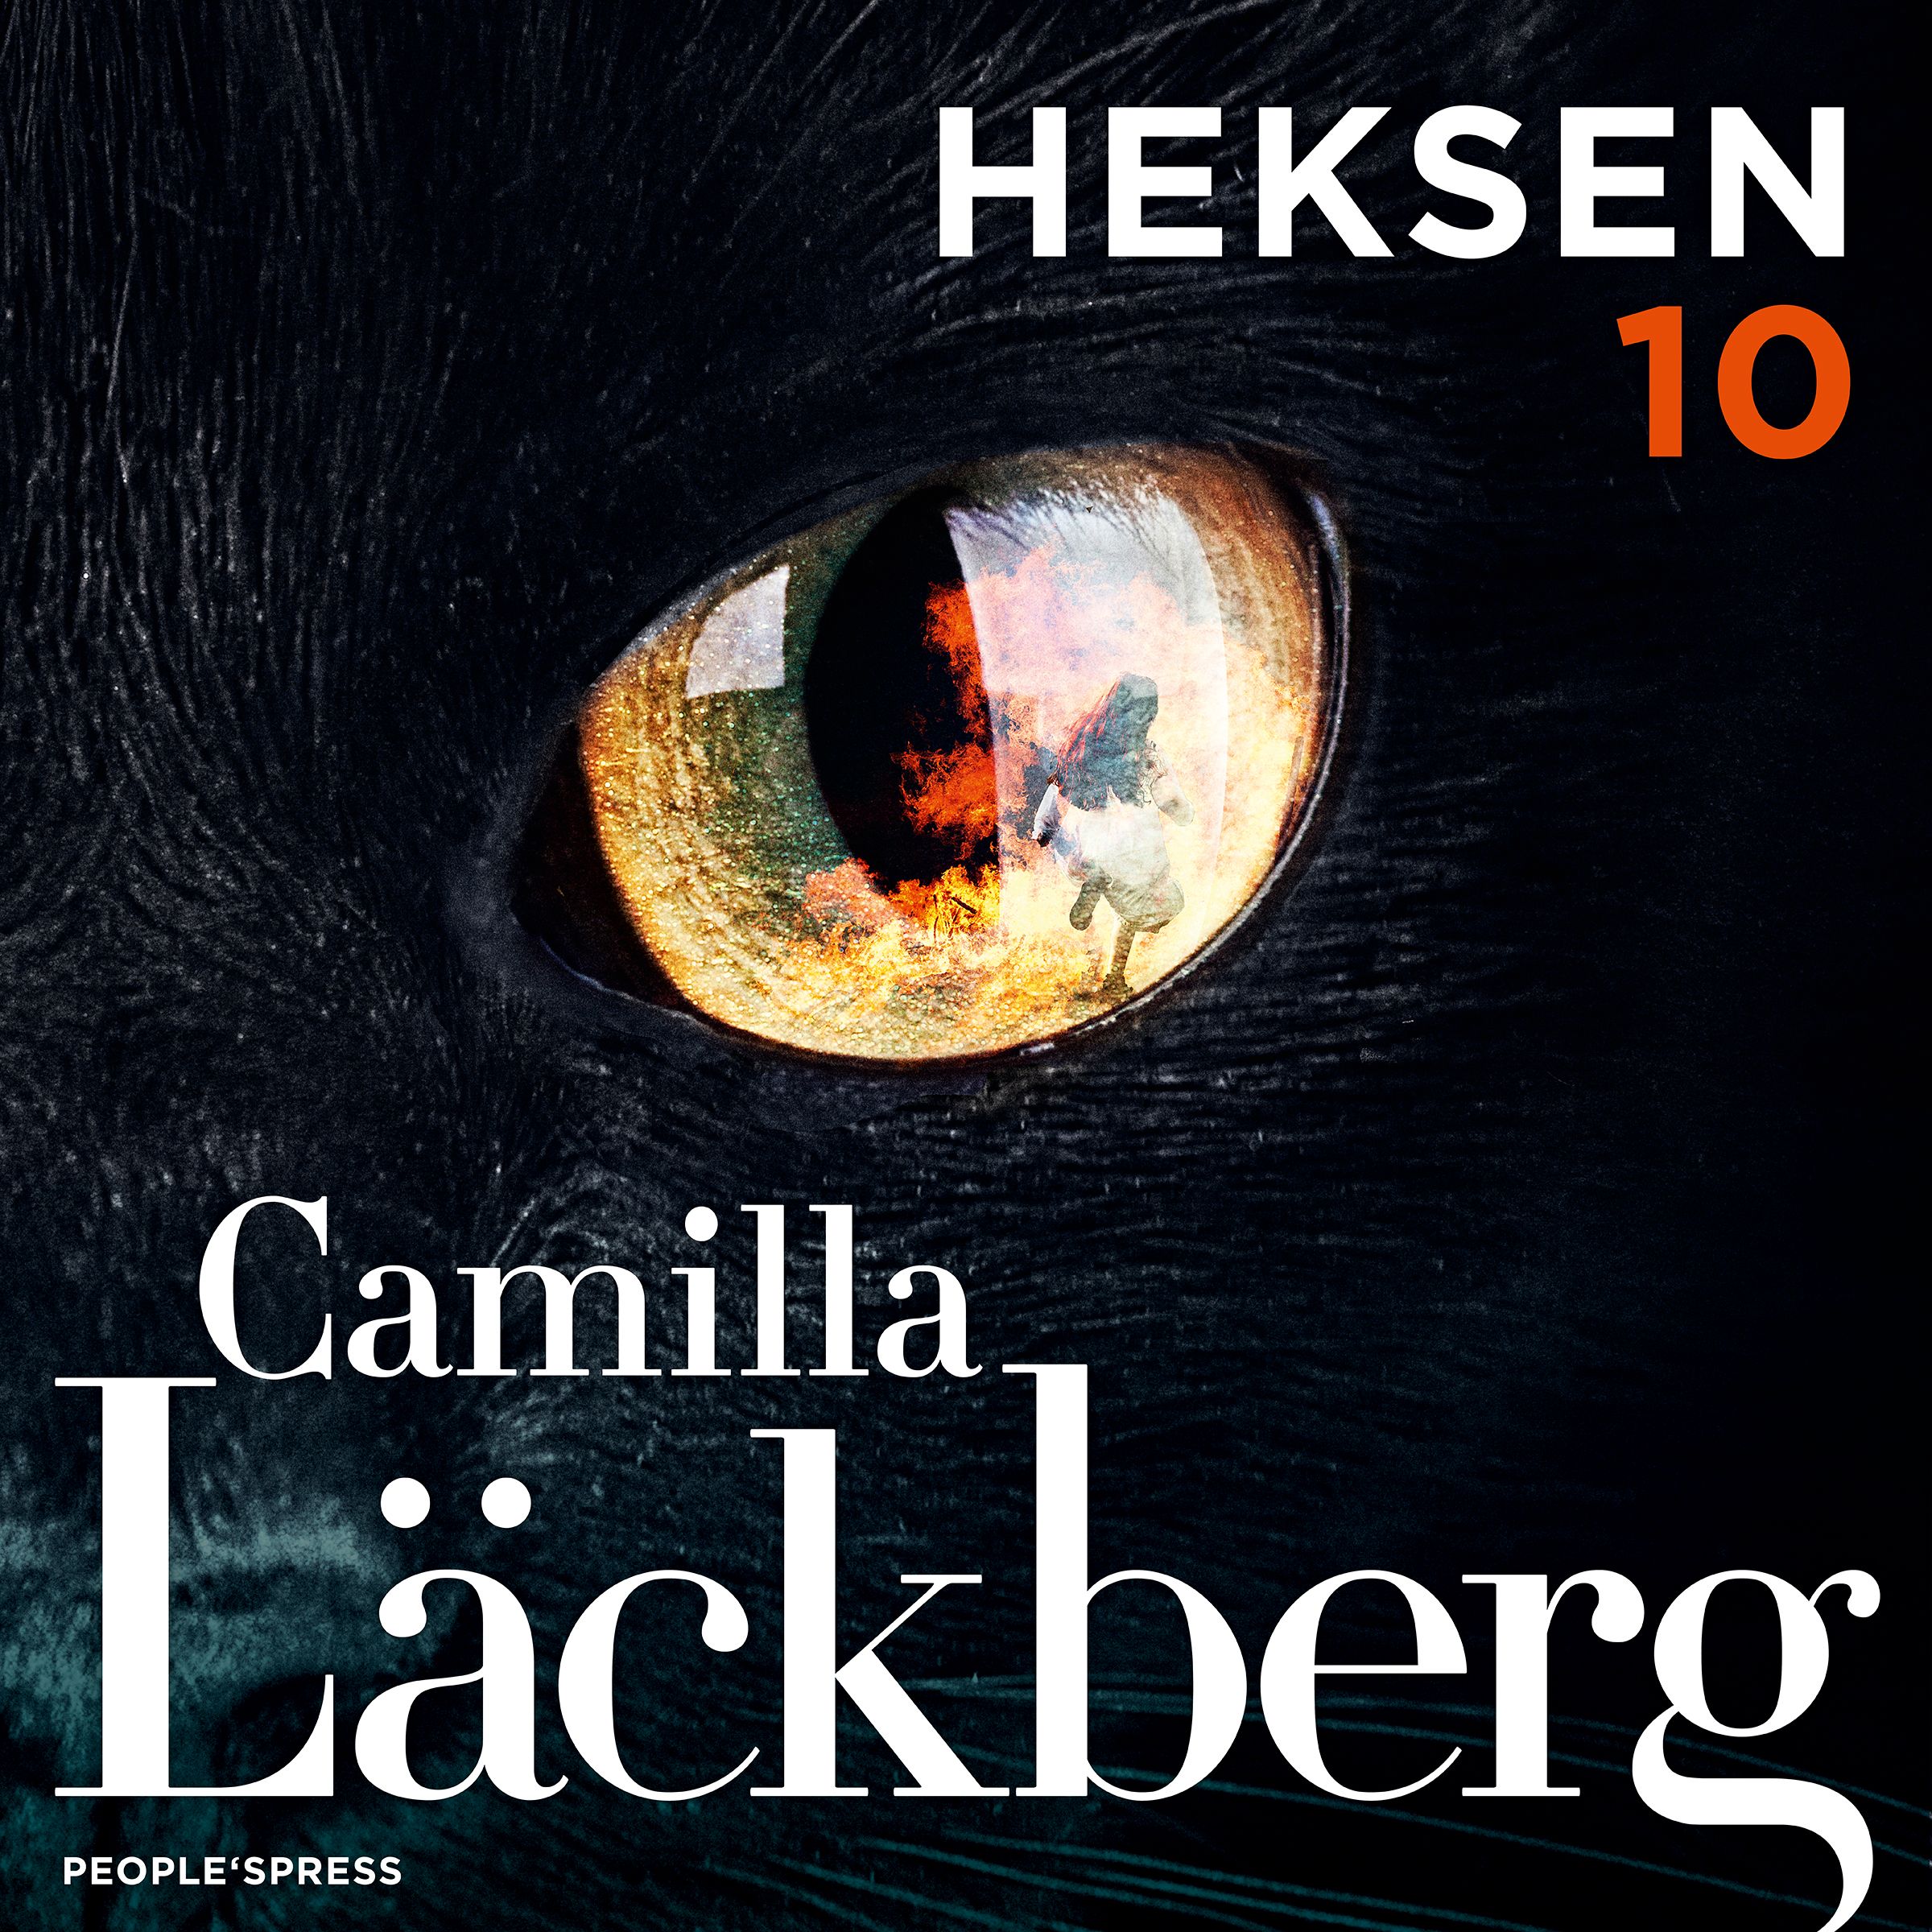 Heksen, lydbog af Camilla Läckberg